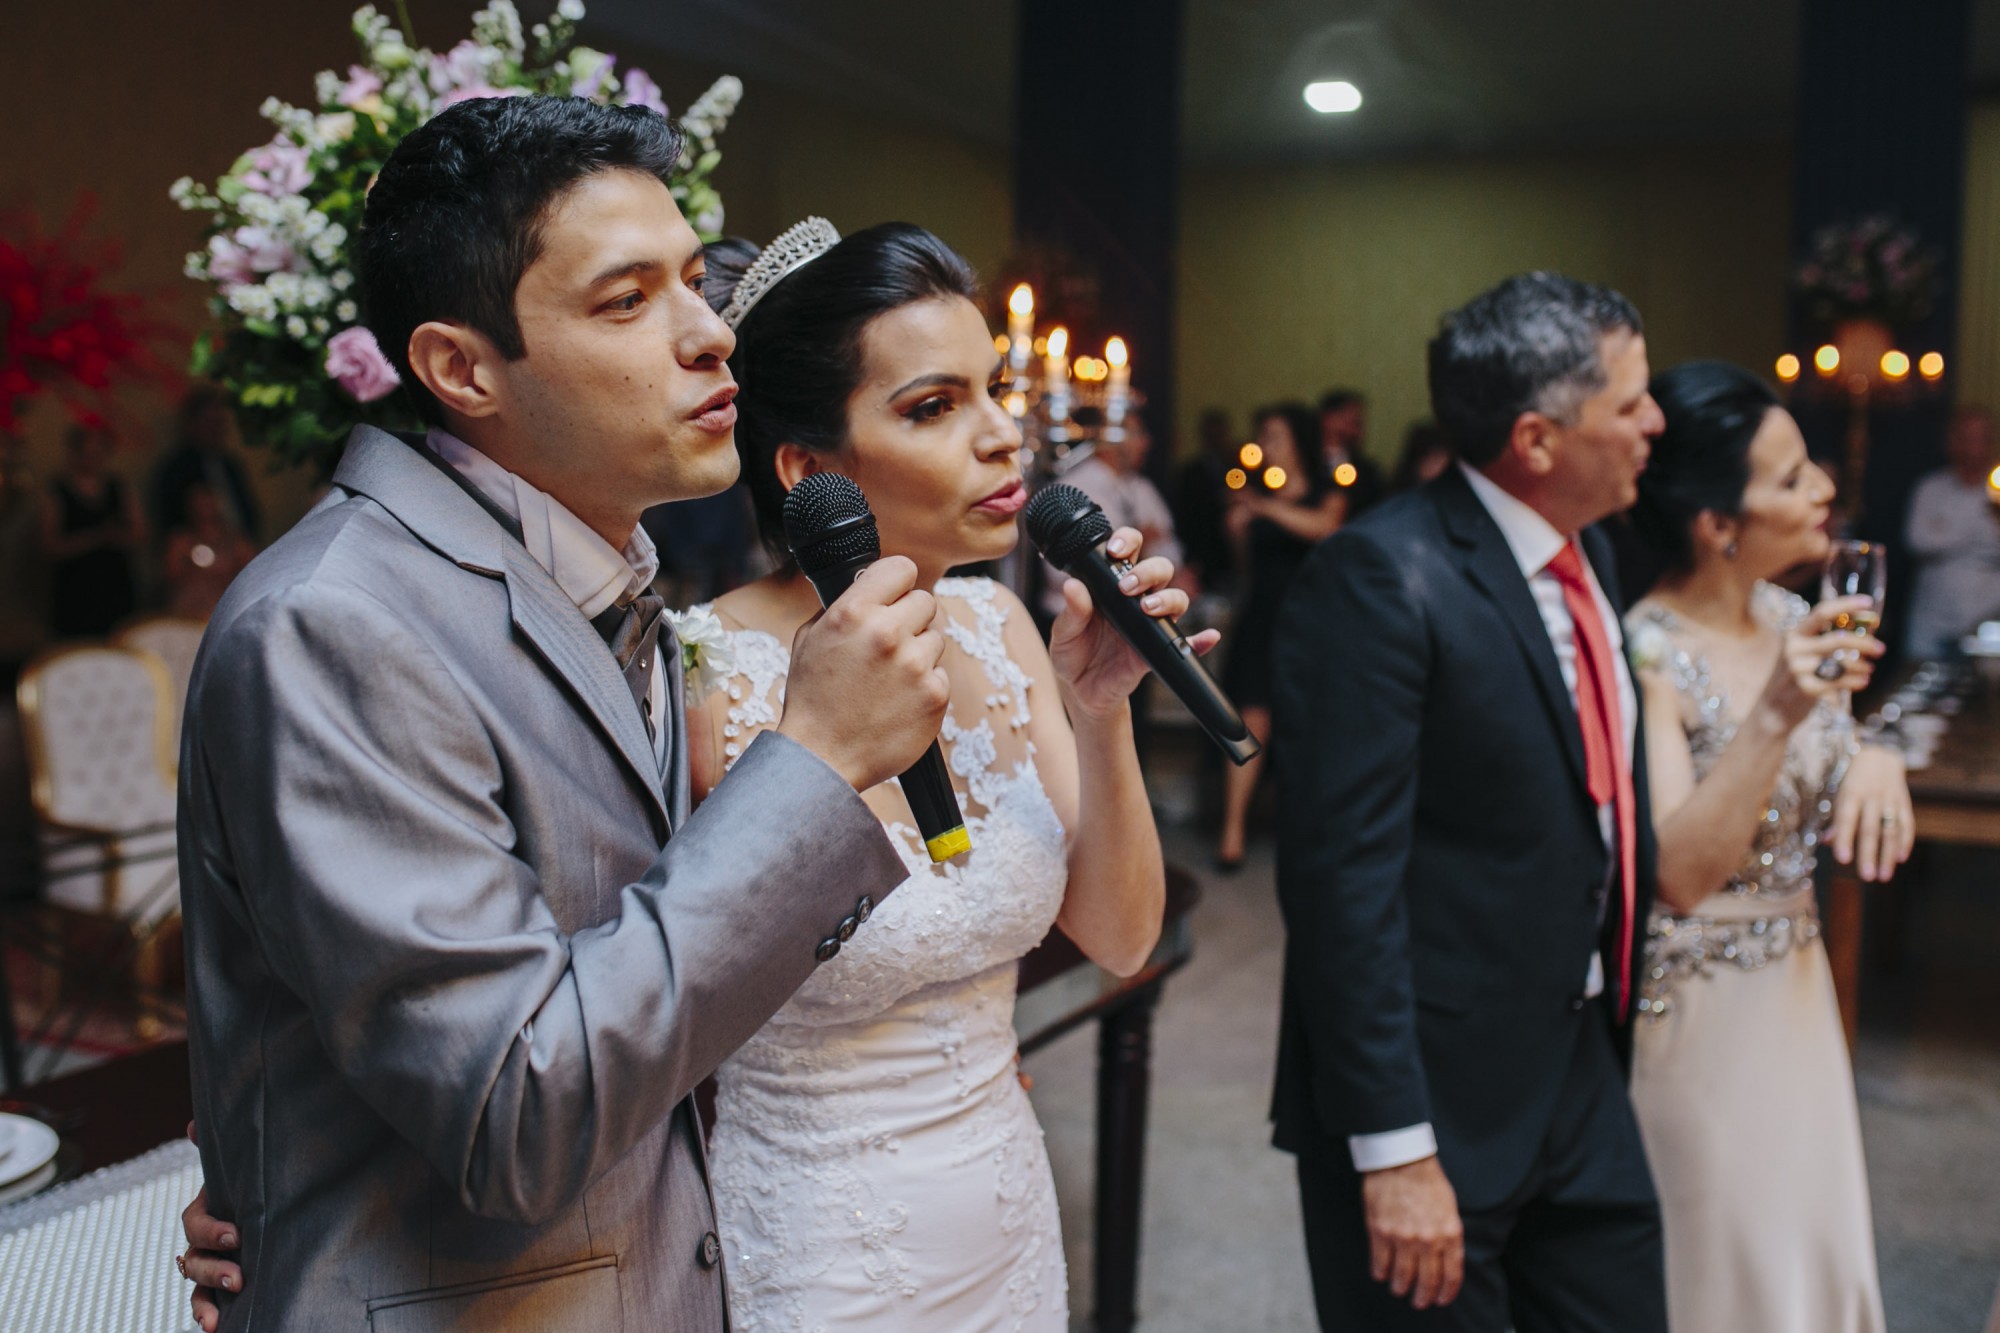 Casamento Camila Rampim e Rafael em Terra Roxa - Paraná - por Lorran Souza e Léia Sotile - fotografos de casamentos - 58